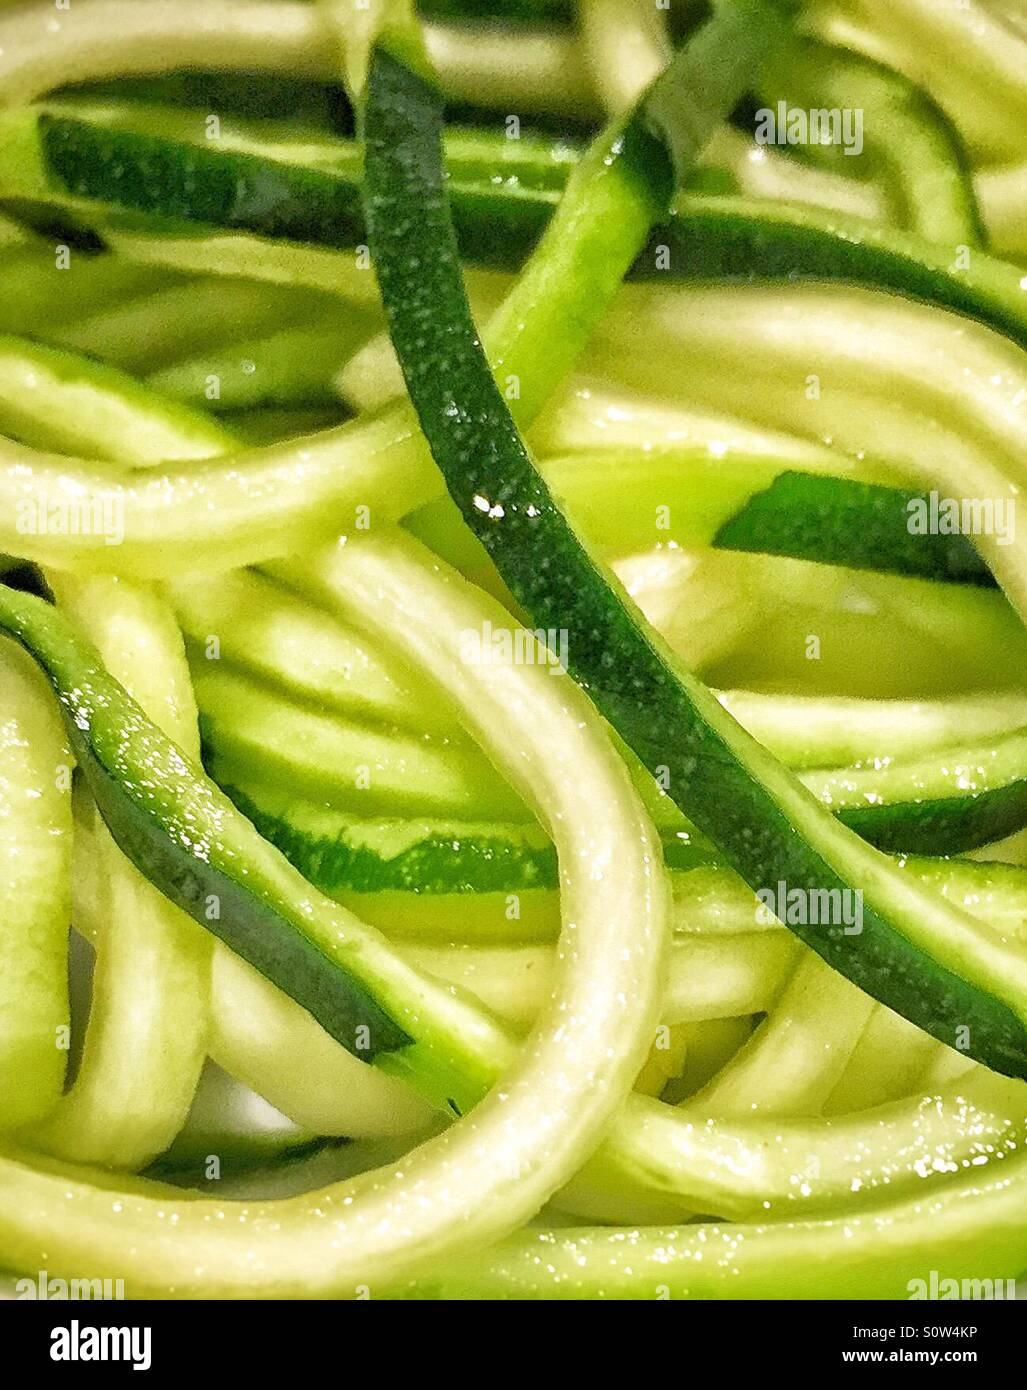 Nahaufnahme von frisch geschnittenen rohen Zucchini auf dem Teller. Das grüne Gemüse wurde in Spaghetti Form durch ein Spiralizer zerteilt. Stockfoto